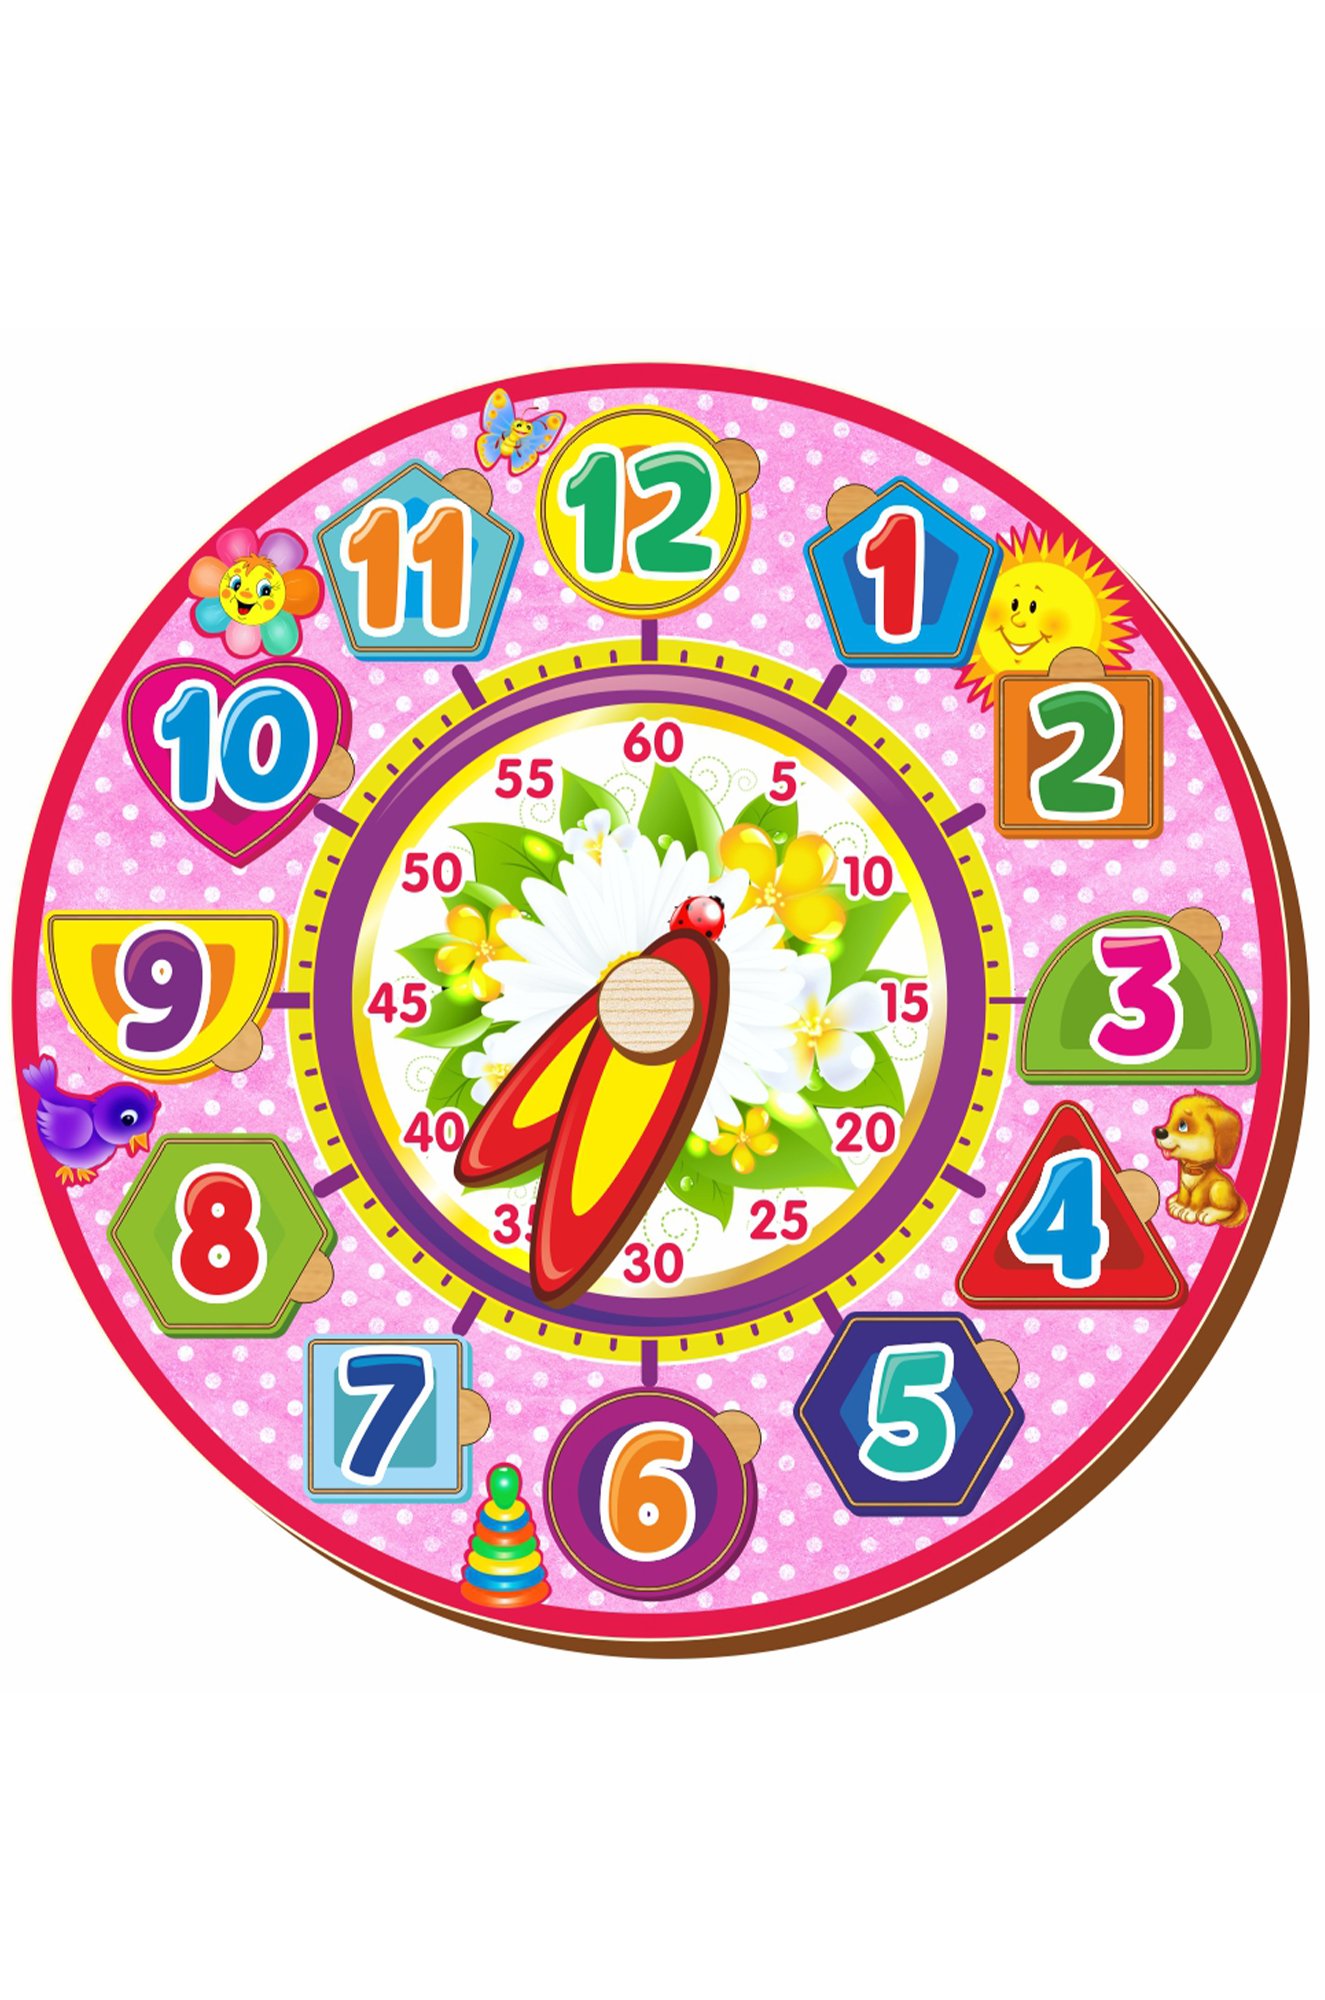 Часы для ребенка в детский сад. Рамка-вкладыш Woodland часы 4 (094204), 12 дет.. Игрушечные часы. Макет часов. Часы обучающие для детей.